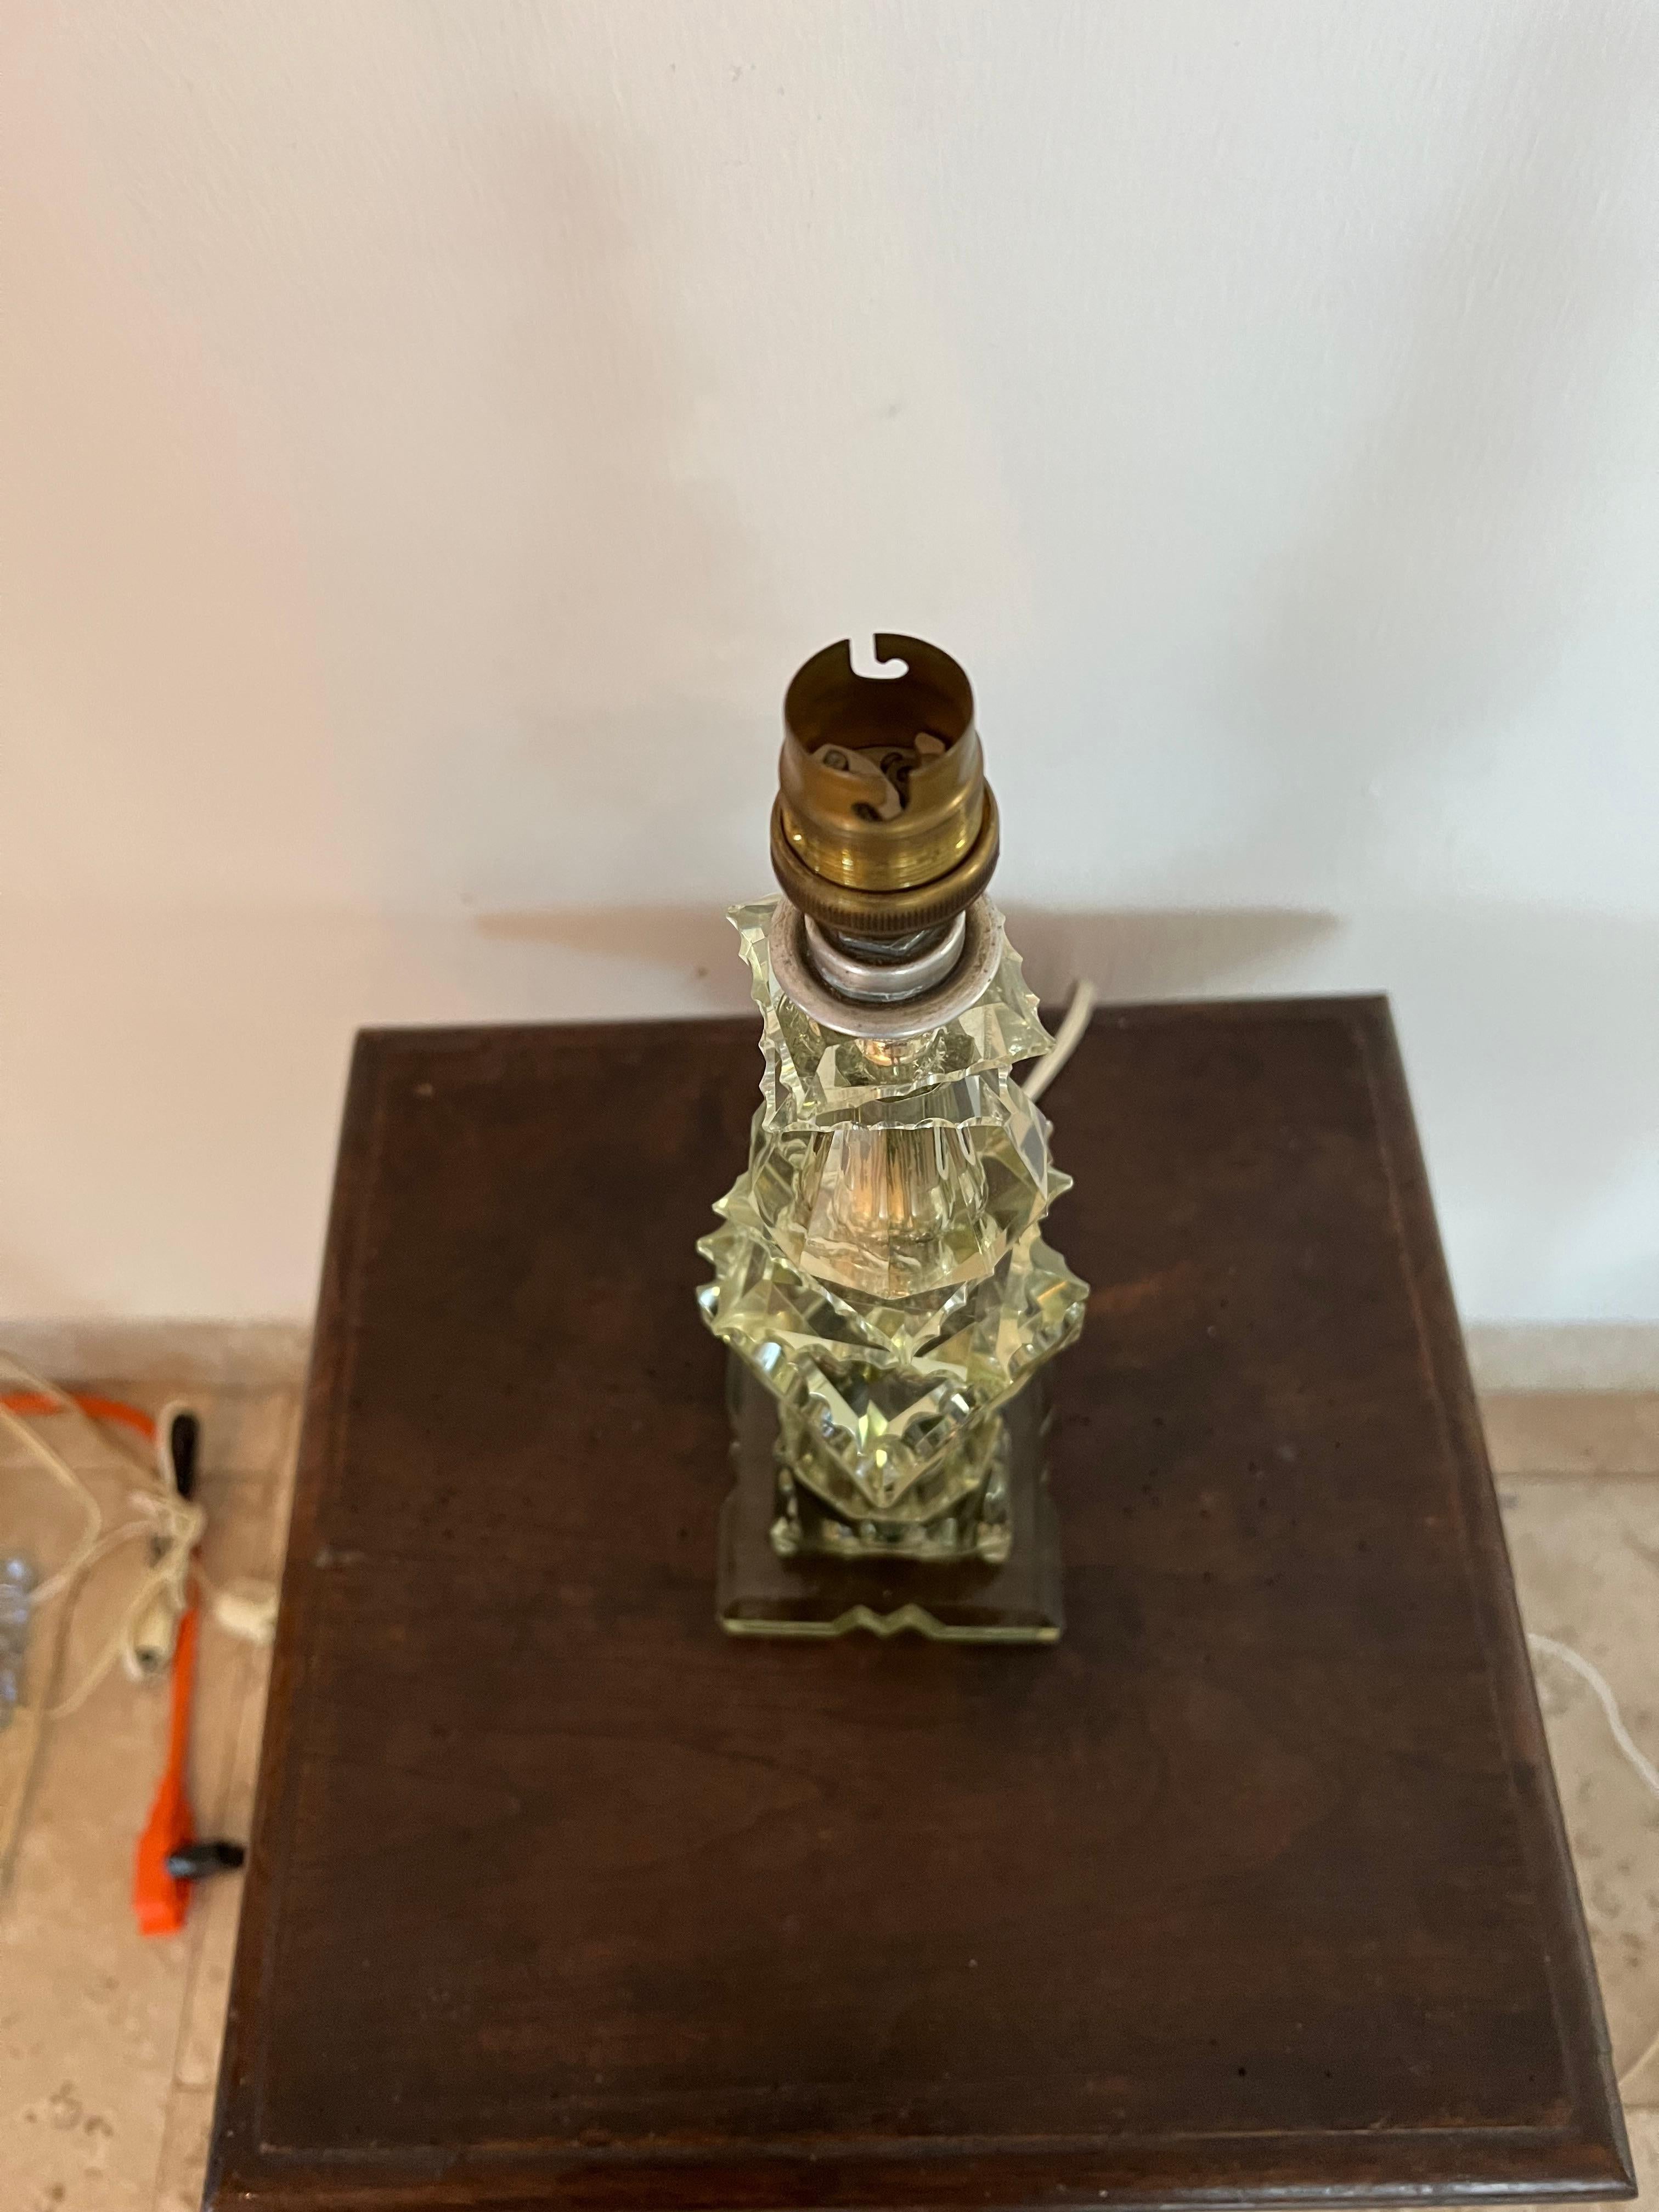 Belle lampe de table Art Déco dans le style de Baccarat et Jacques Adnet, non marquée.
Fabriqué en verre plombé coupé à la main, légèrement vert.
France vers 1940.
Les pièces 